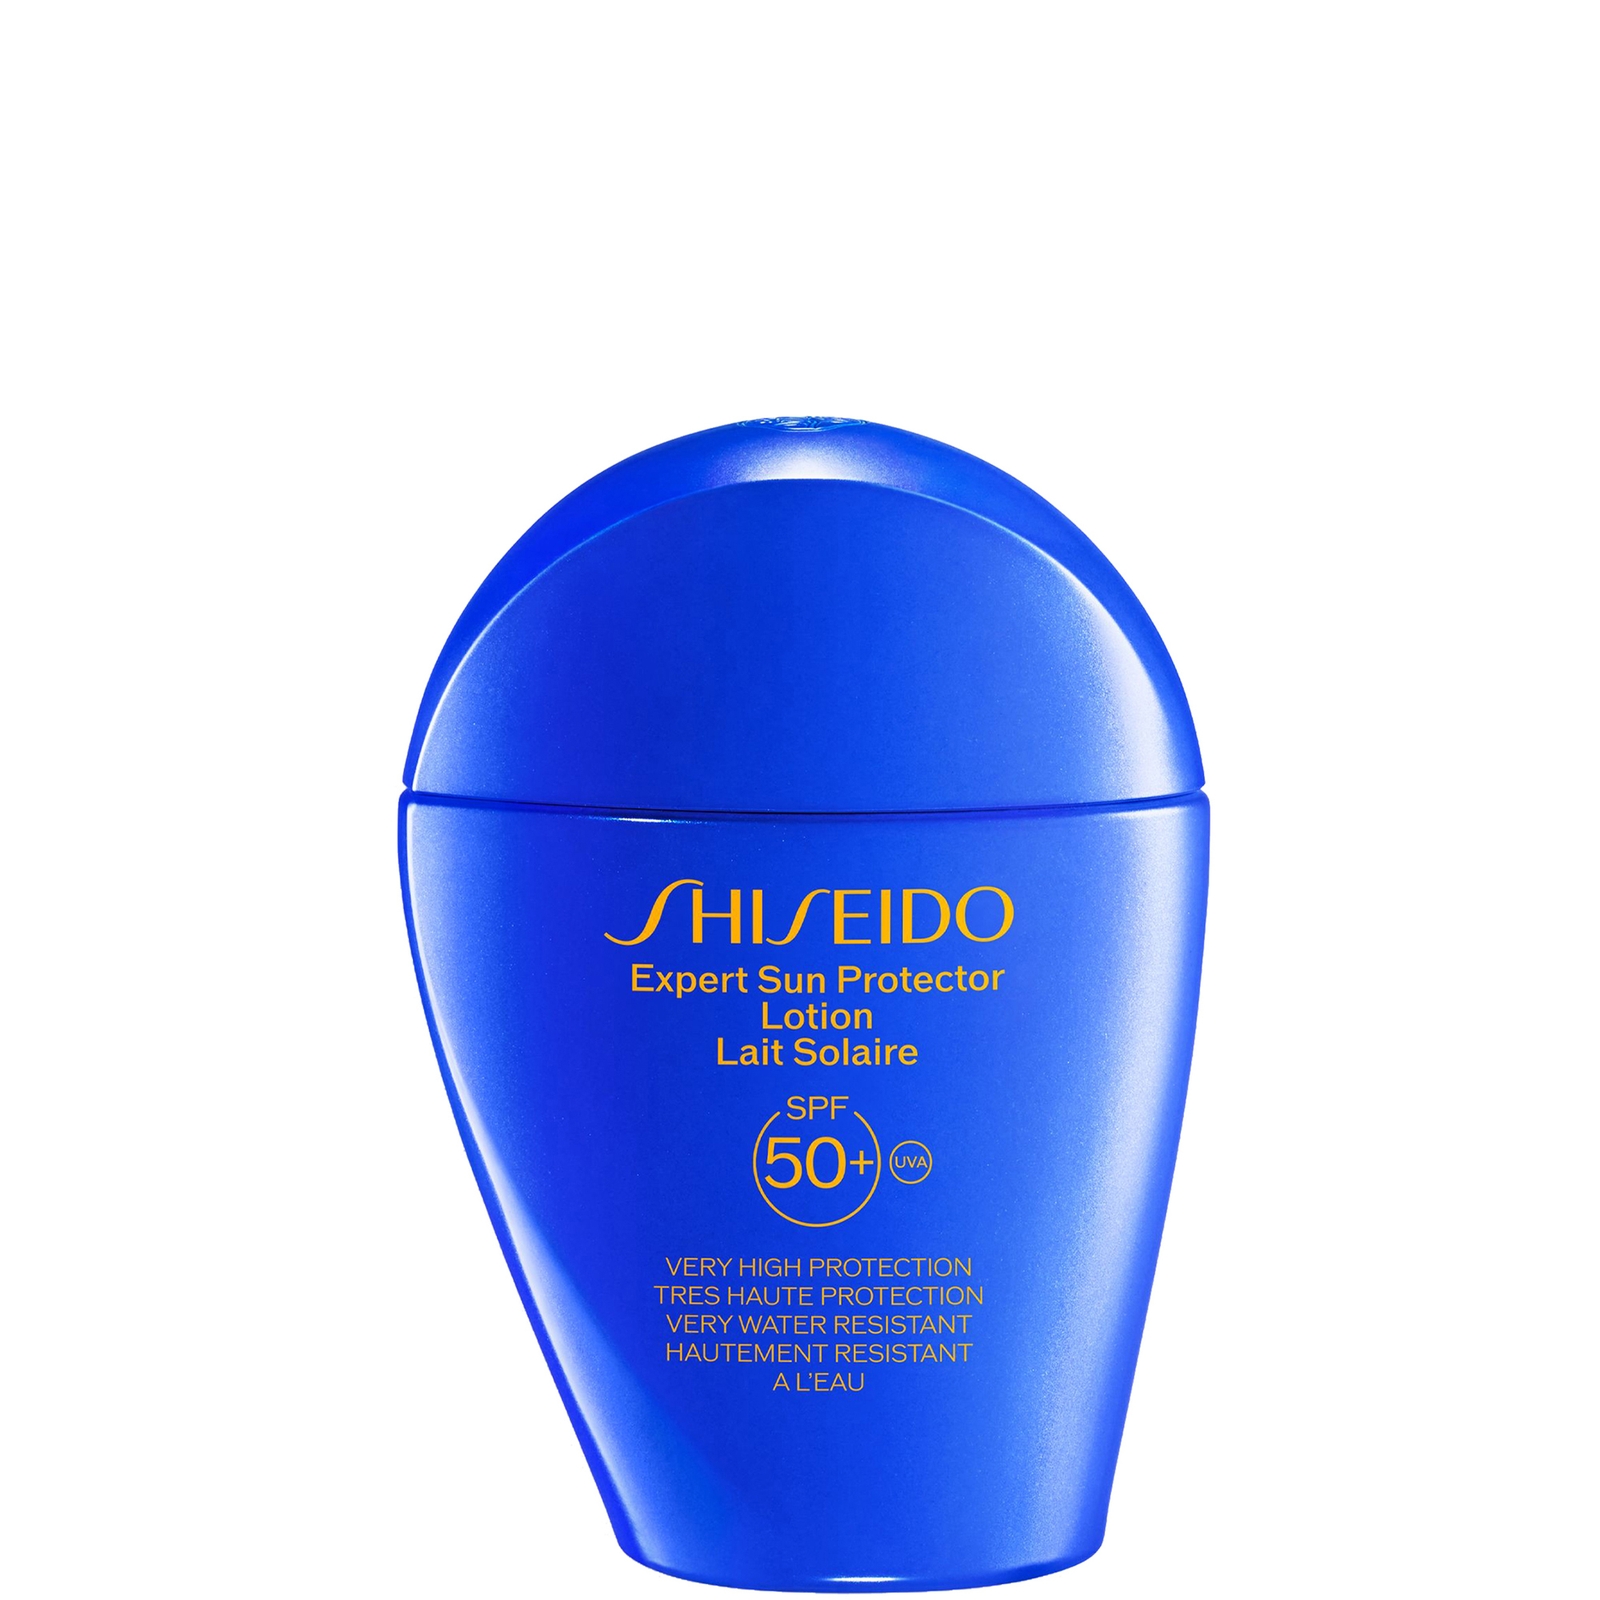 Shiseido Expert Sun Protector Face and Body Lotion SPF50+ 50ml von Shiseido